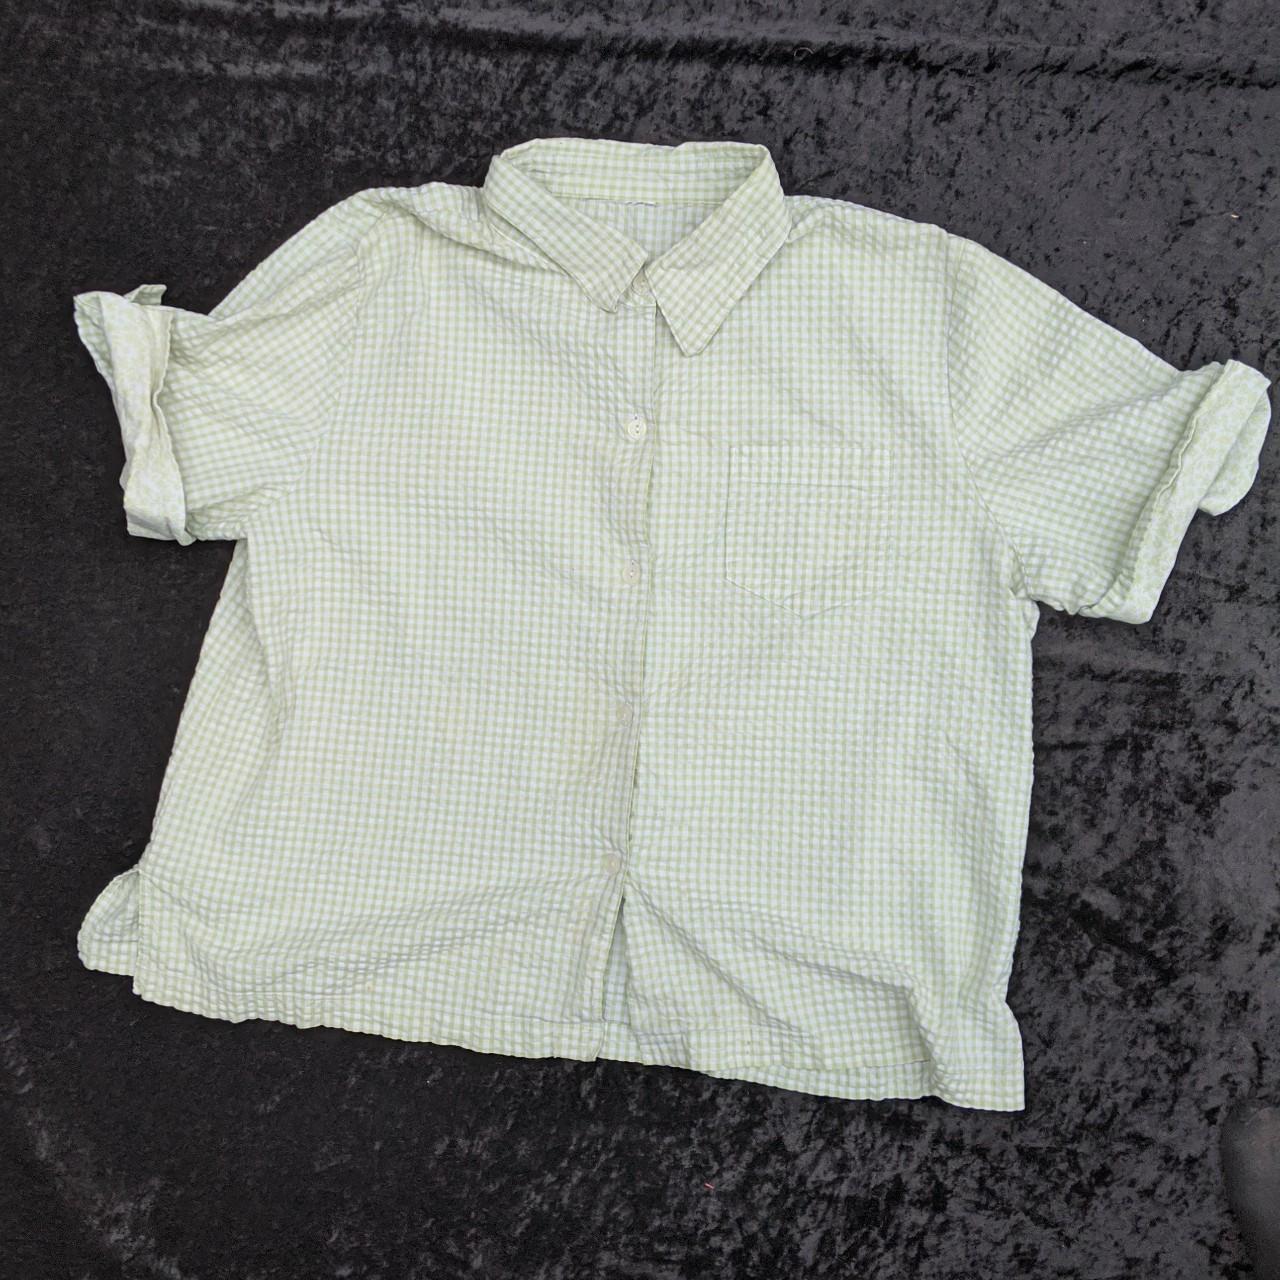 Green Textured Gingham Button Up Short Sleeve Shirt... - Depop